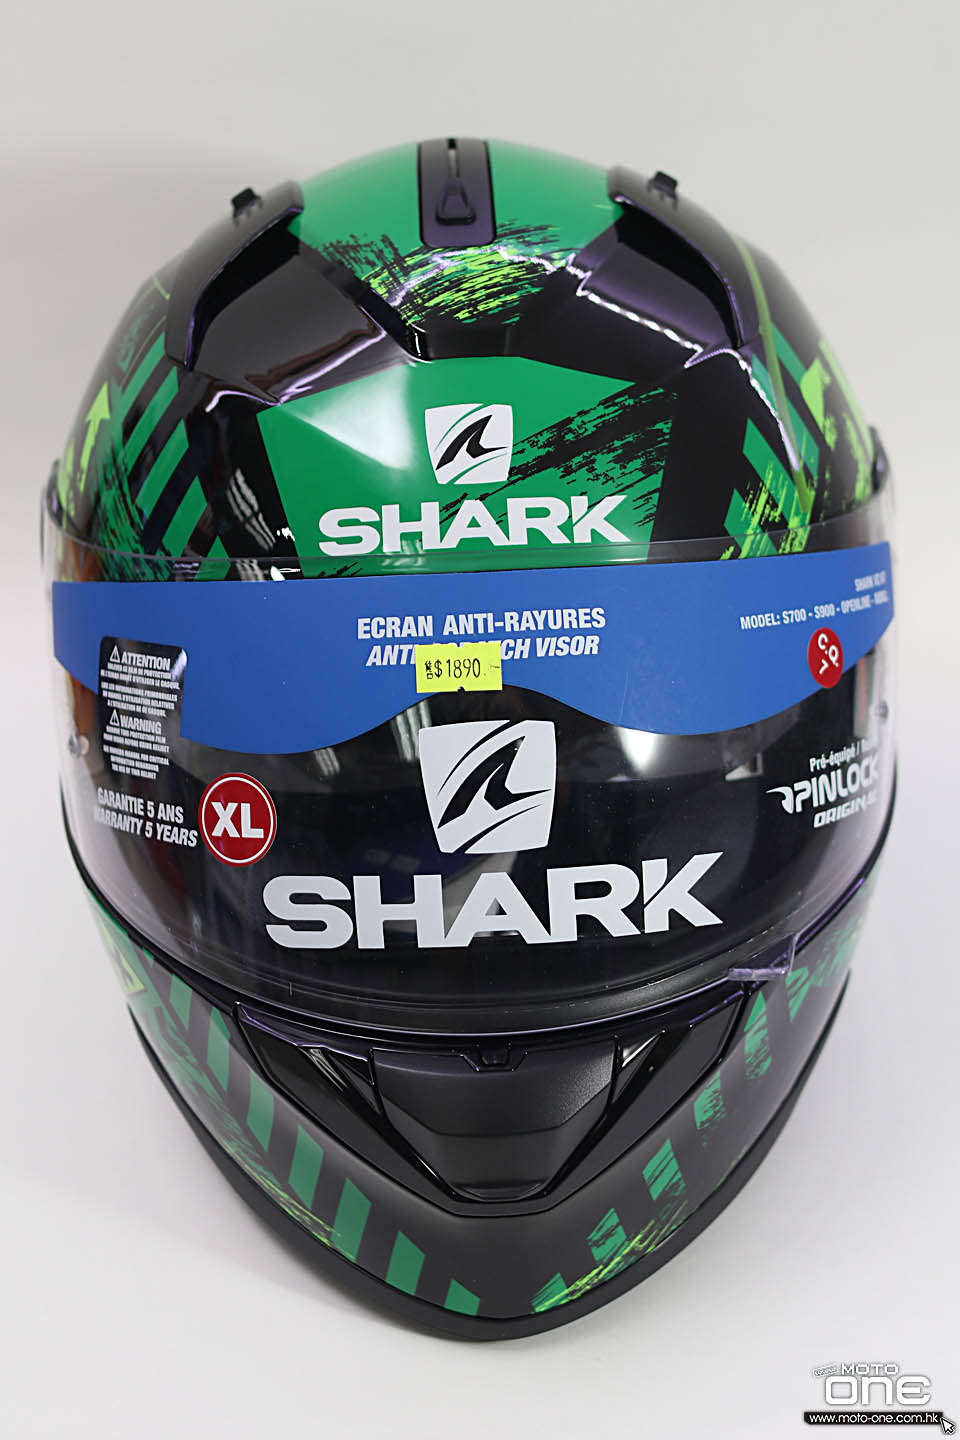 2018 SHARK D-SKWAL RIDILL helmets